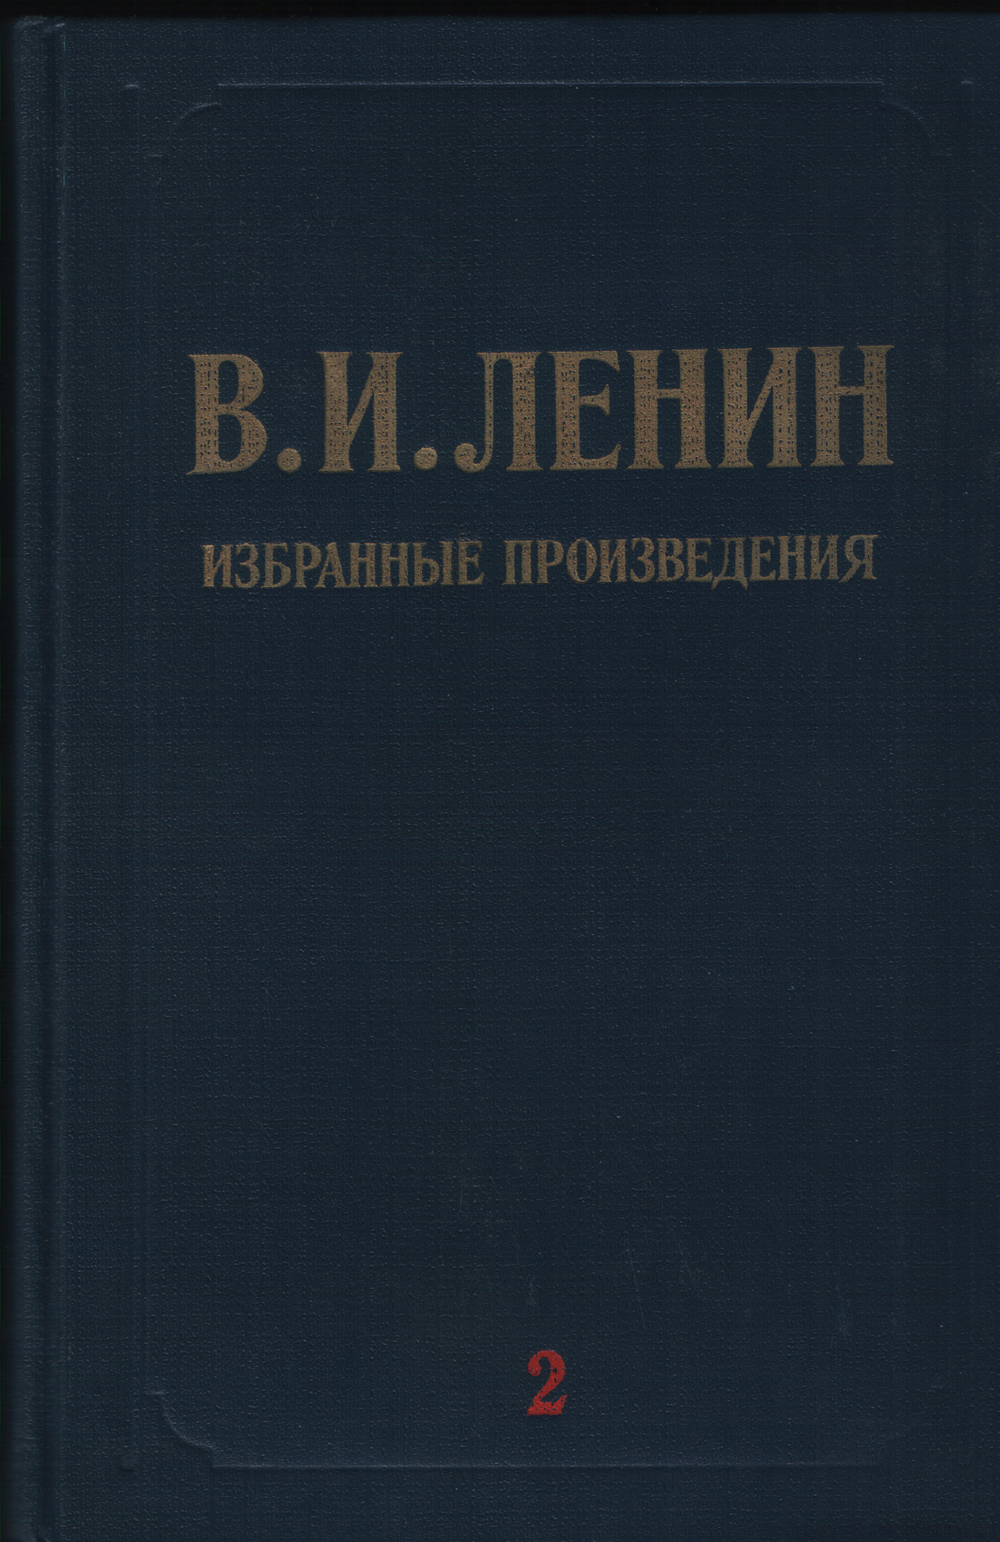 Избранные произведения в 3 томах. Том 2 (Март 1917-ноябрь 1918)